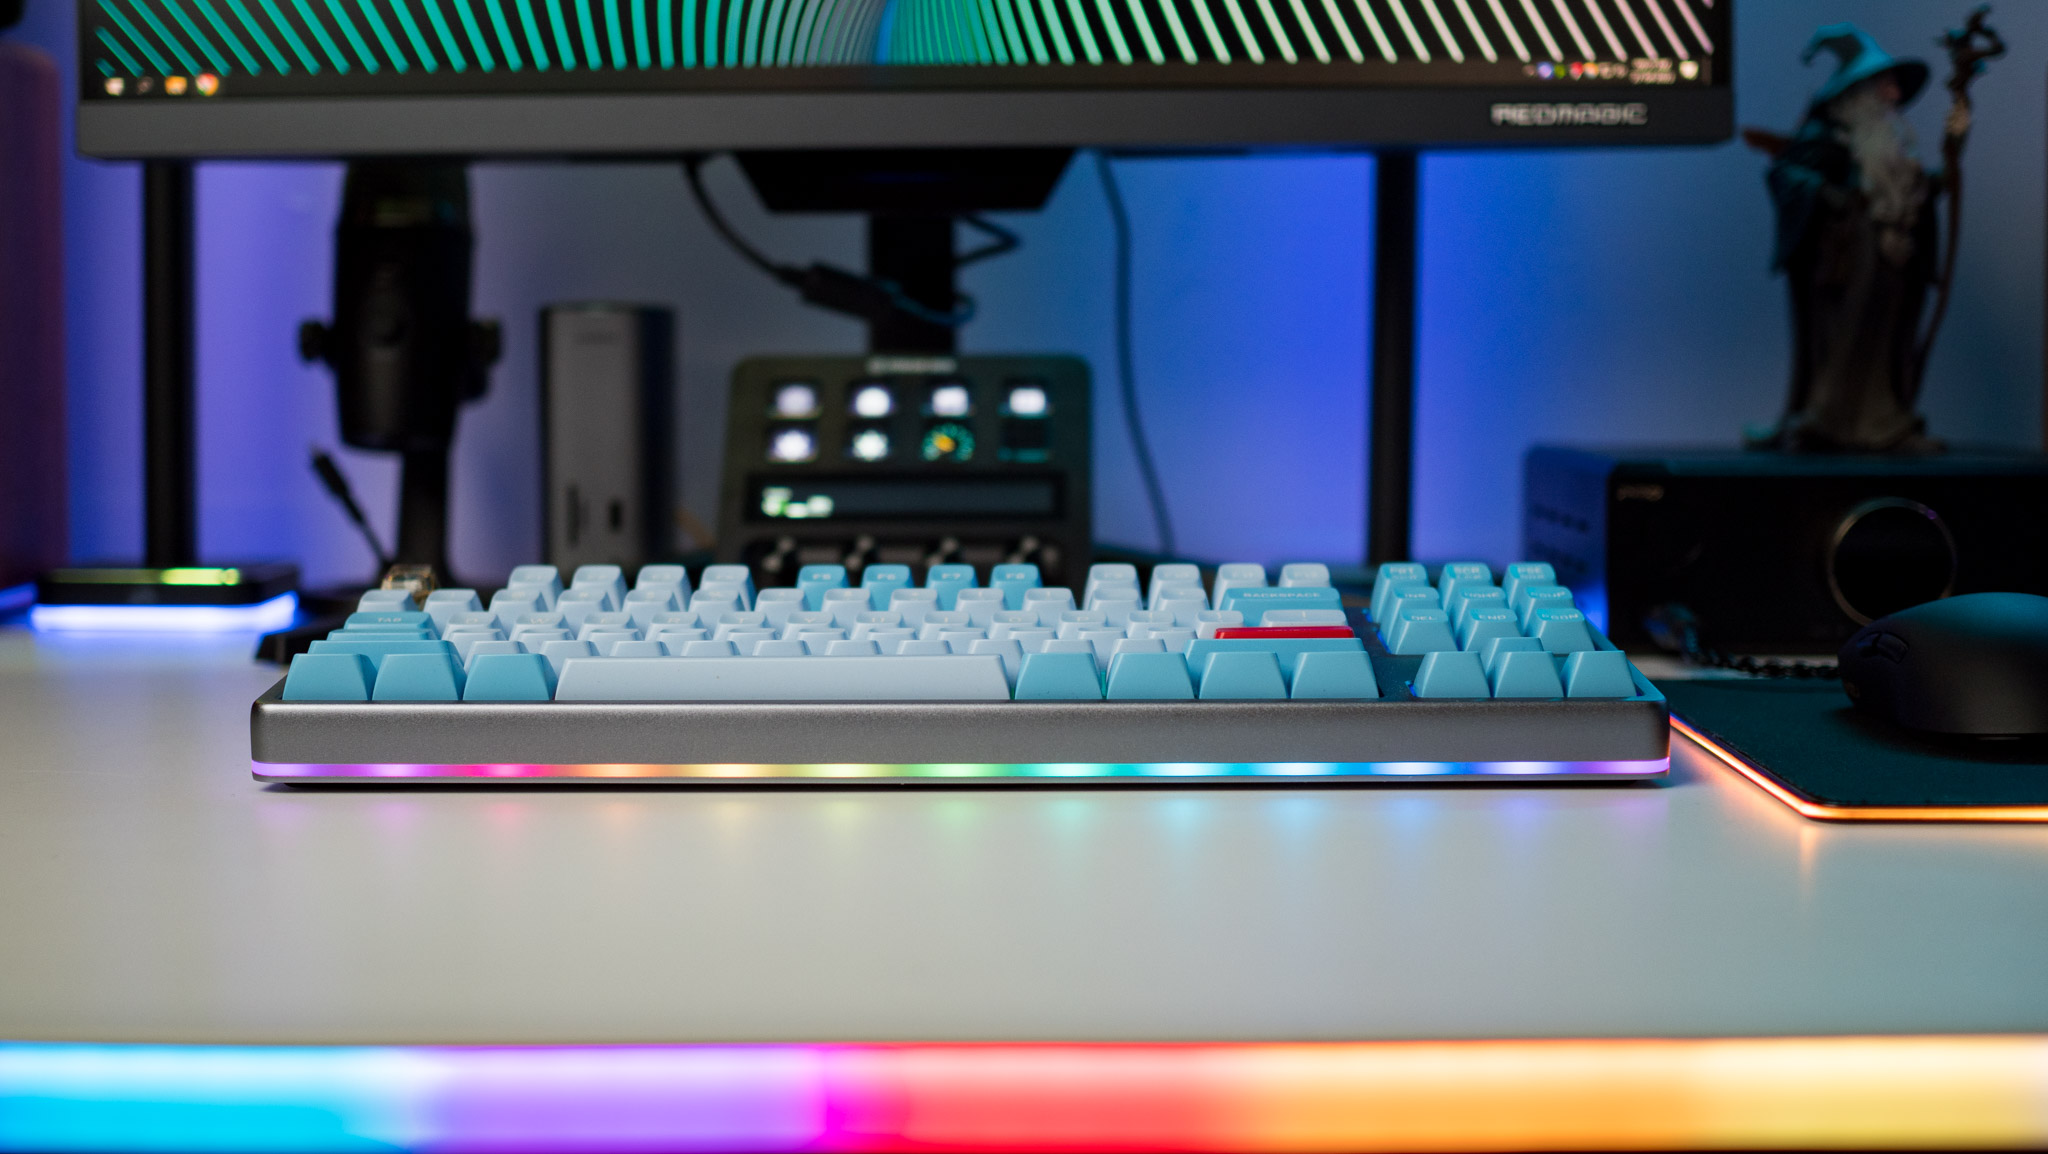 Iluminação RGB no Drop Americana Keyboard destacada contra o primeiro plano RGB